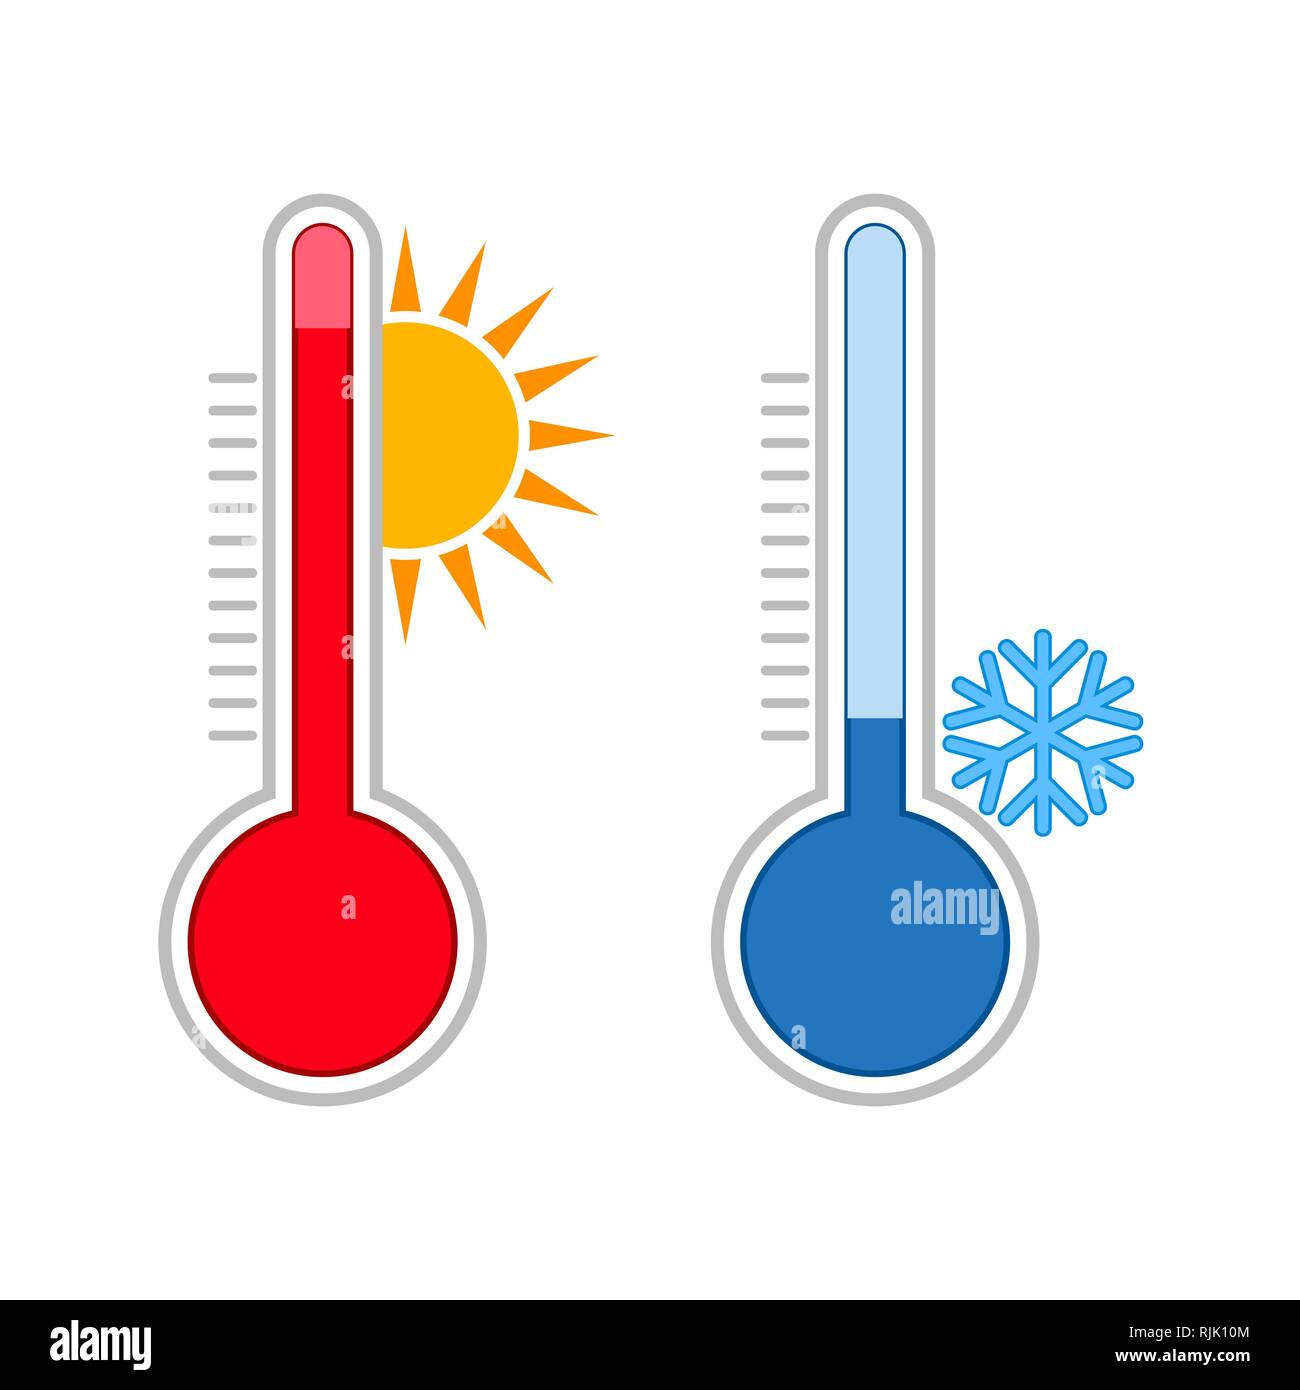 Meteorologie Thermometer. Messen von heißen und kalten Temperaturen. Snowflake, Sonne Symbole. Stock Vektor